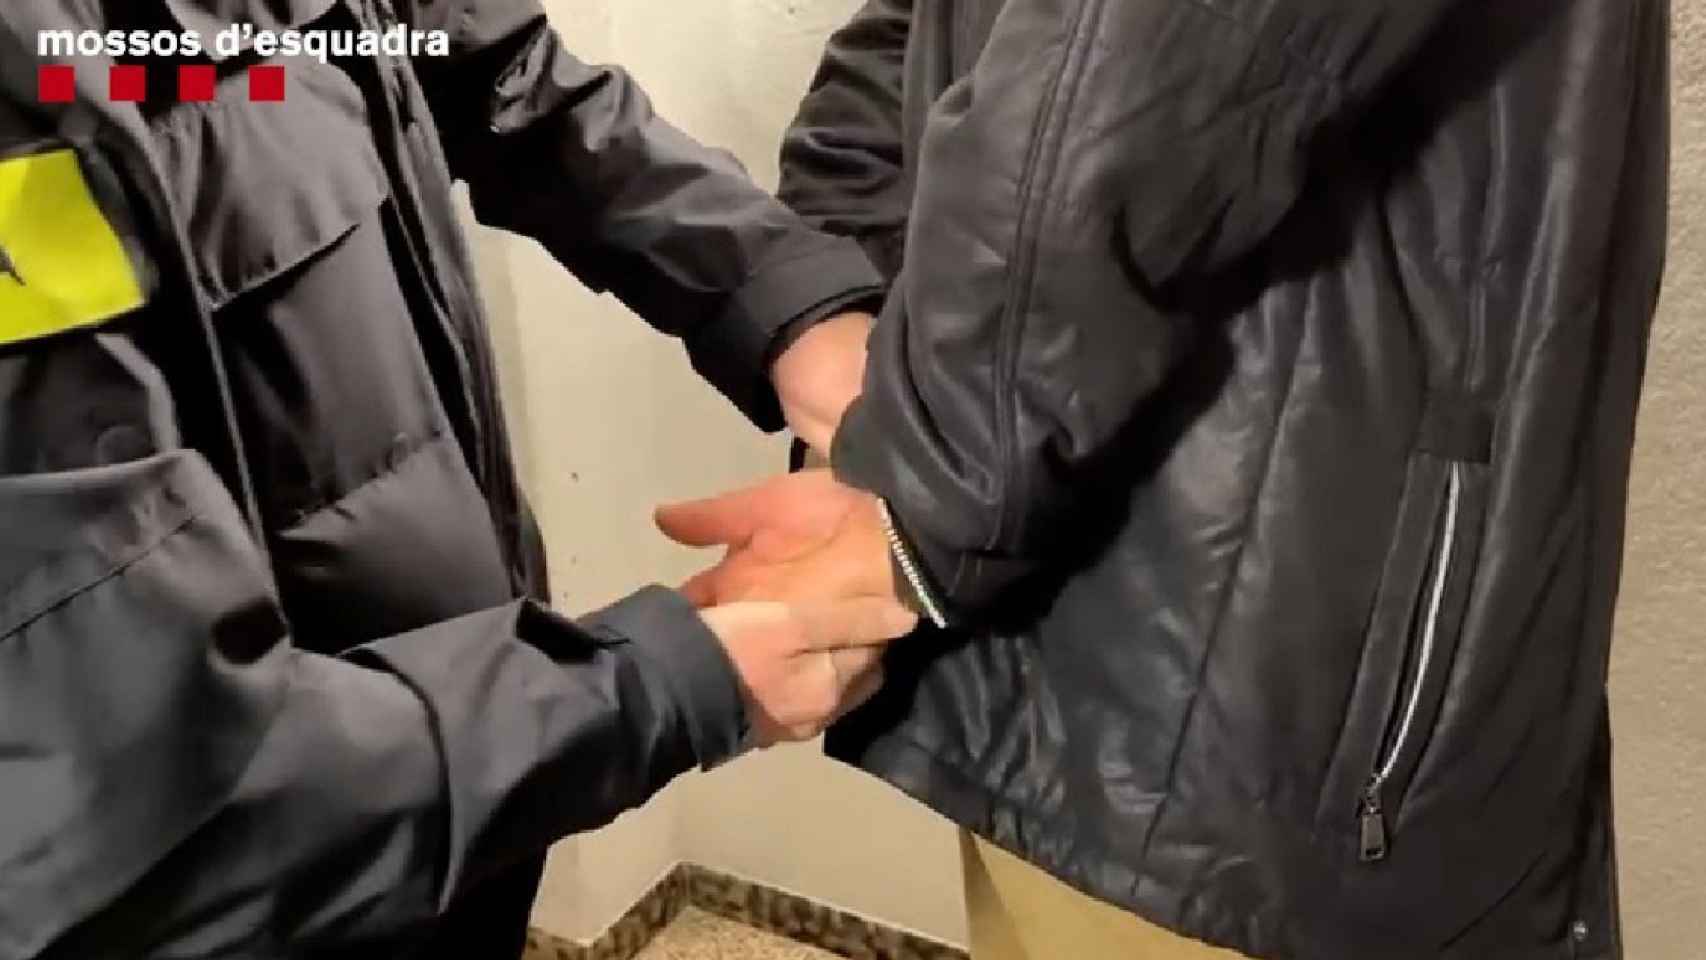 Los Mossos efectúan una detención, como la del hombre que intentó violar a una chica tras una cena de Halloween en Barcelona / MOSSOS